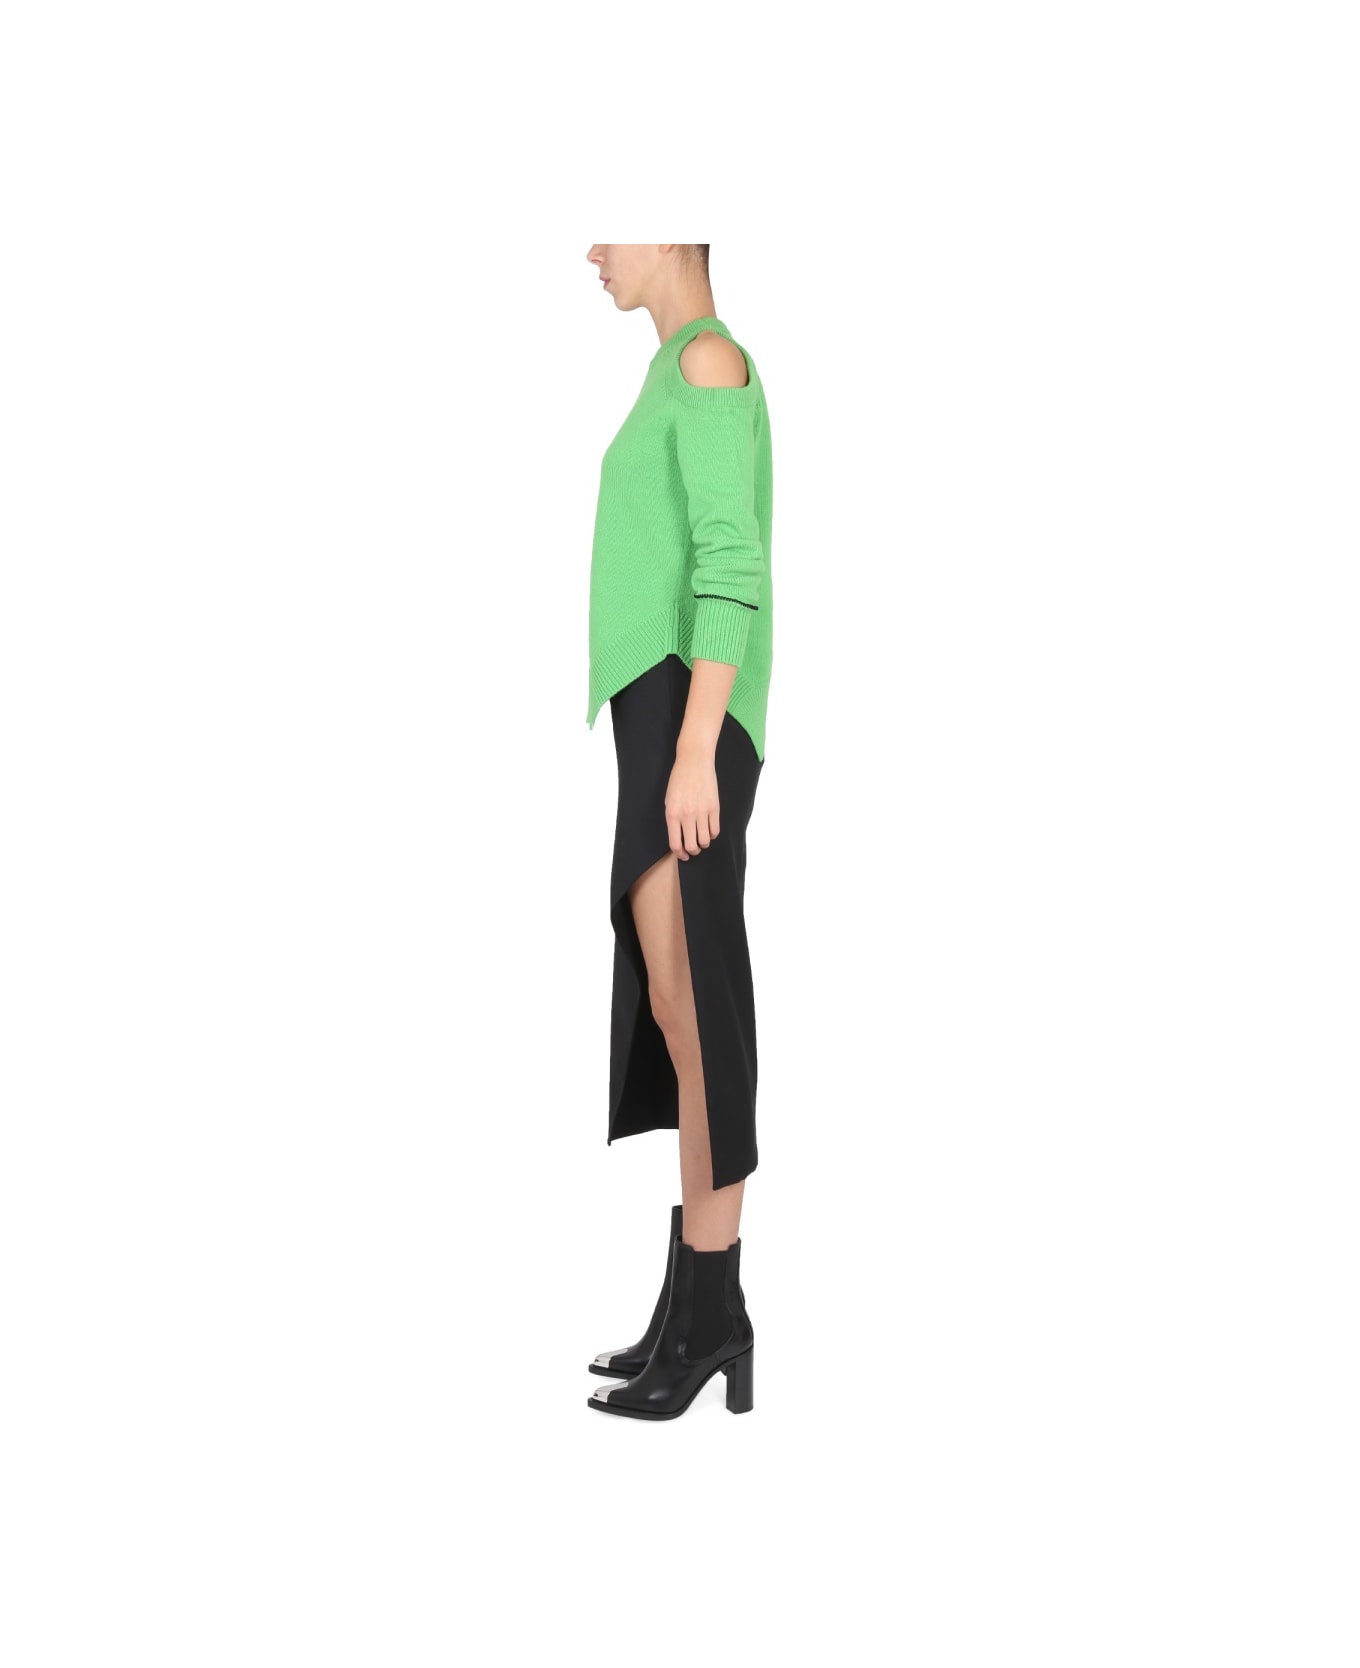 Alexander McQueen Wool And Mohair Skirt - BLACK スカート